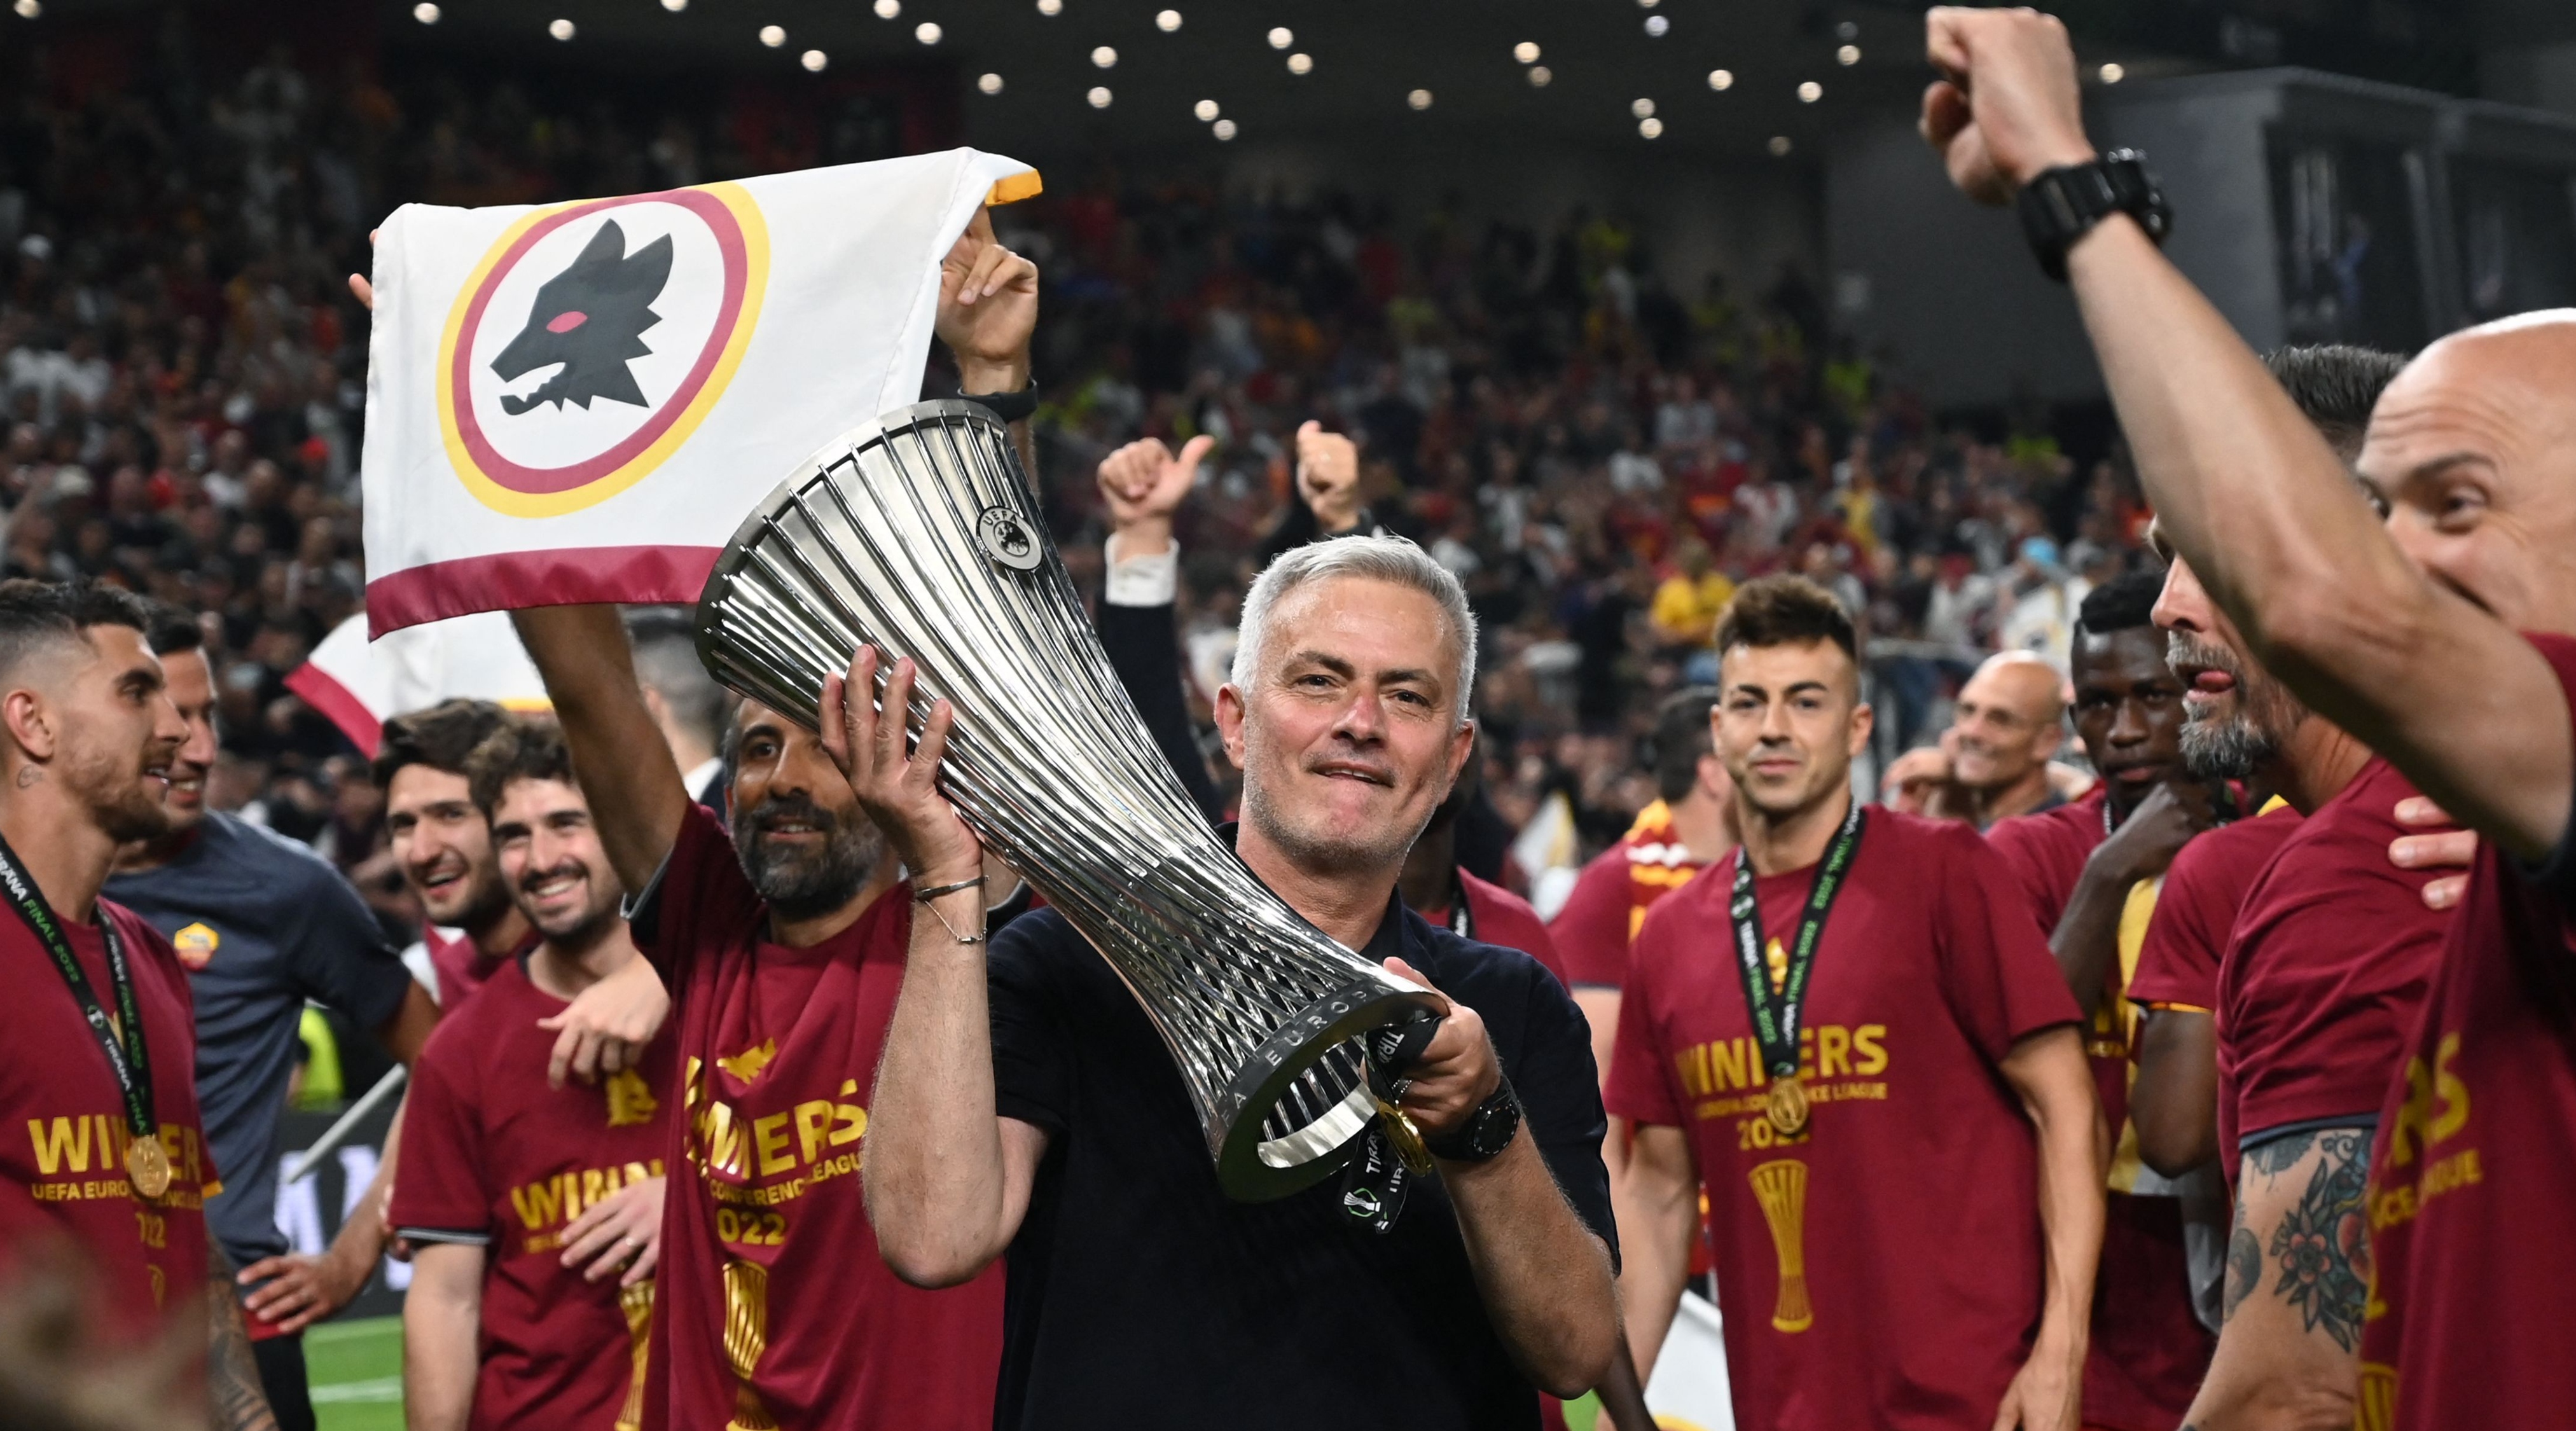 احتفل مدرب روما جوزيه مورينيو باللقب بعد فوز فريقه بمباراة كرة القدم النهائية لدوري أوروبا للمؤتمرات بين روما وفينورد على ملعب طيران ألبانيا في تيرانا في 25 مايو 2022.